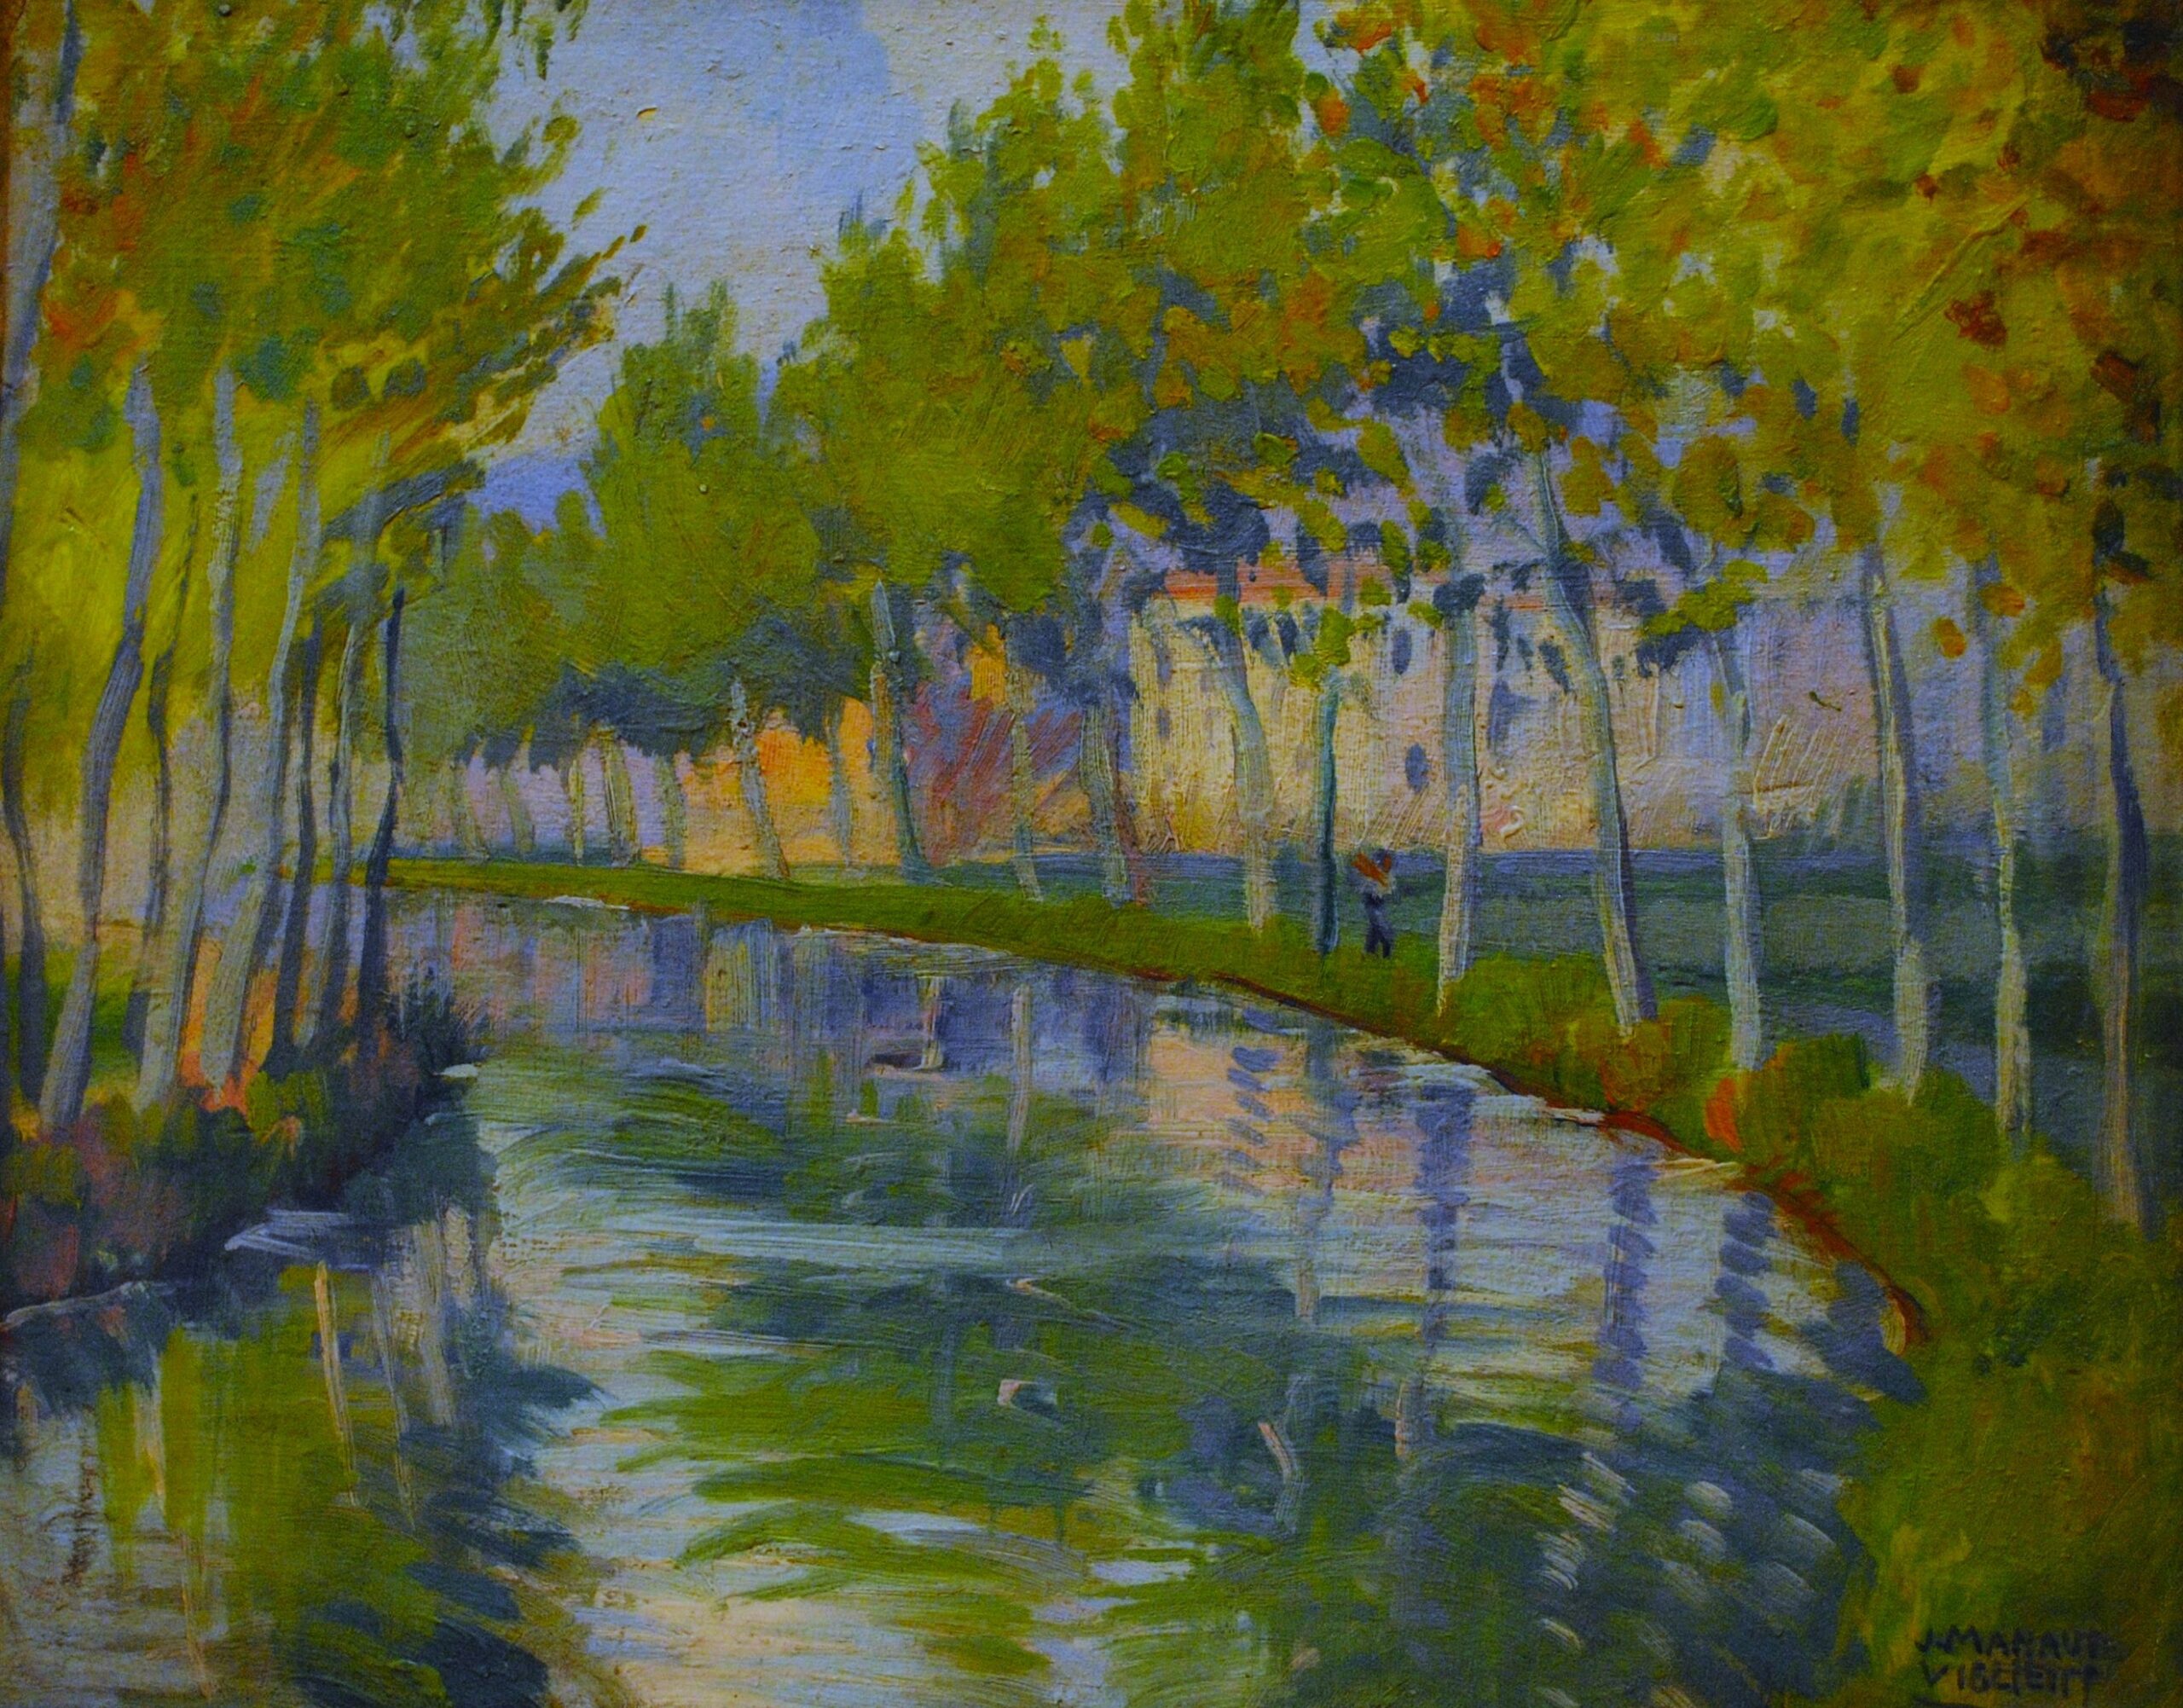 Pintura de José Manaut titulada Canal, Tortosa, 1935. Óleo sobre lienzo.